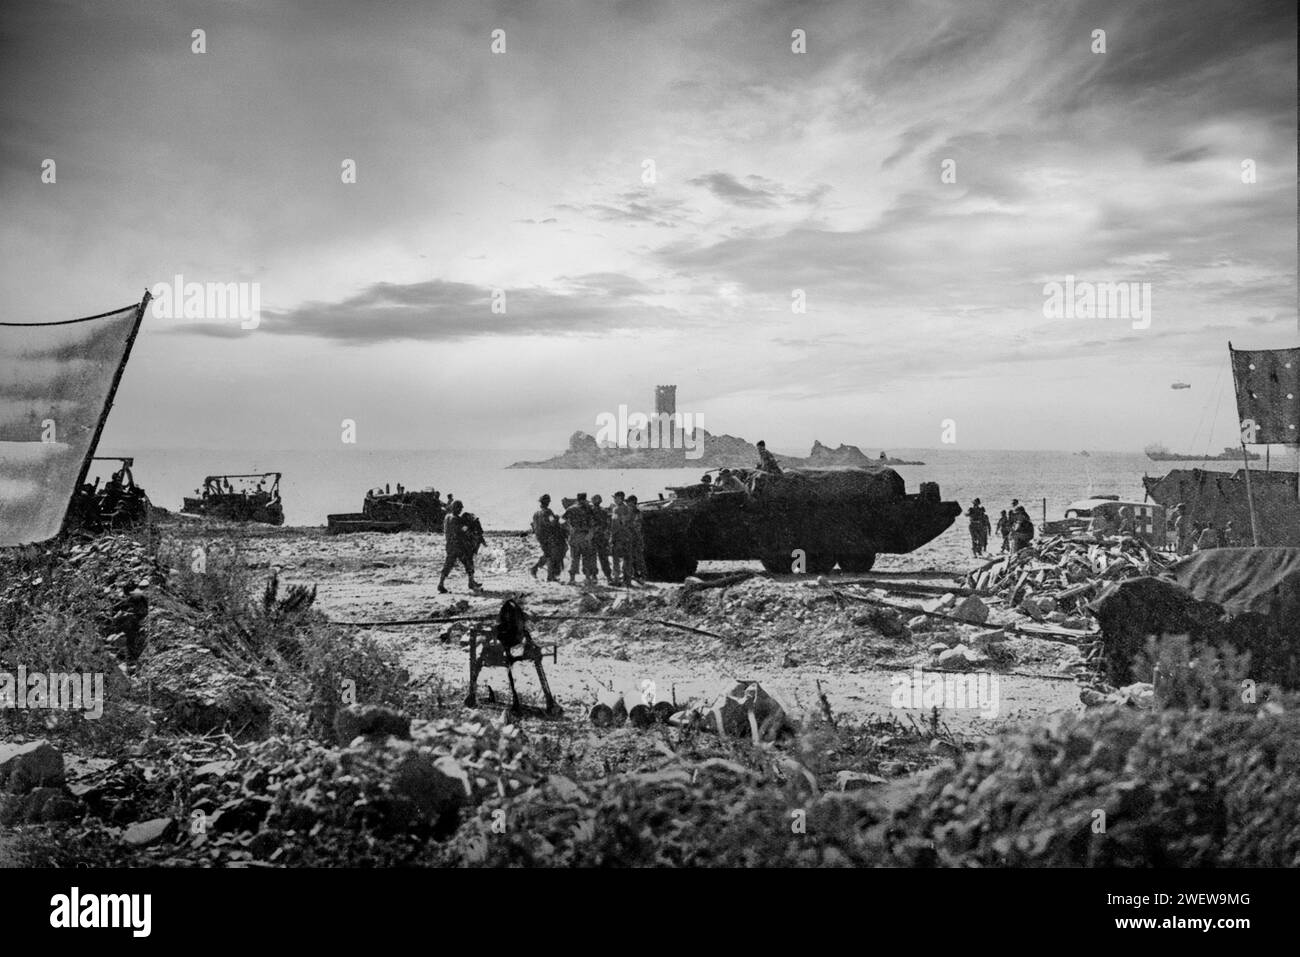 Alle 8,00 del 15 agosto 1944, le navi d'assalto sbarcarono truppe alleate sulla costa meridionale della Francia, parte dell'invasione alleata dell'Europa durante la seconda guerra mondiale. Foto Stock